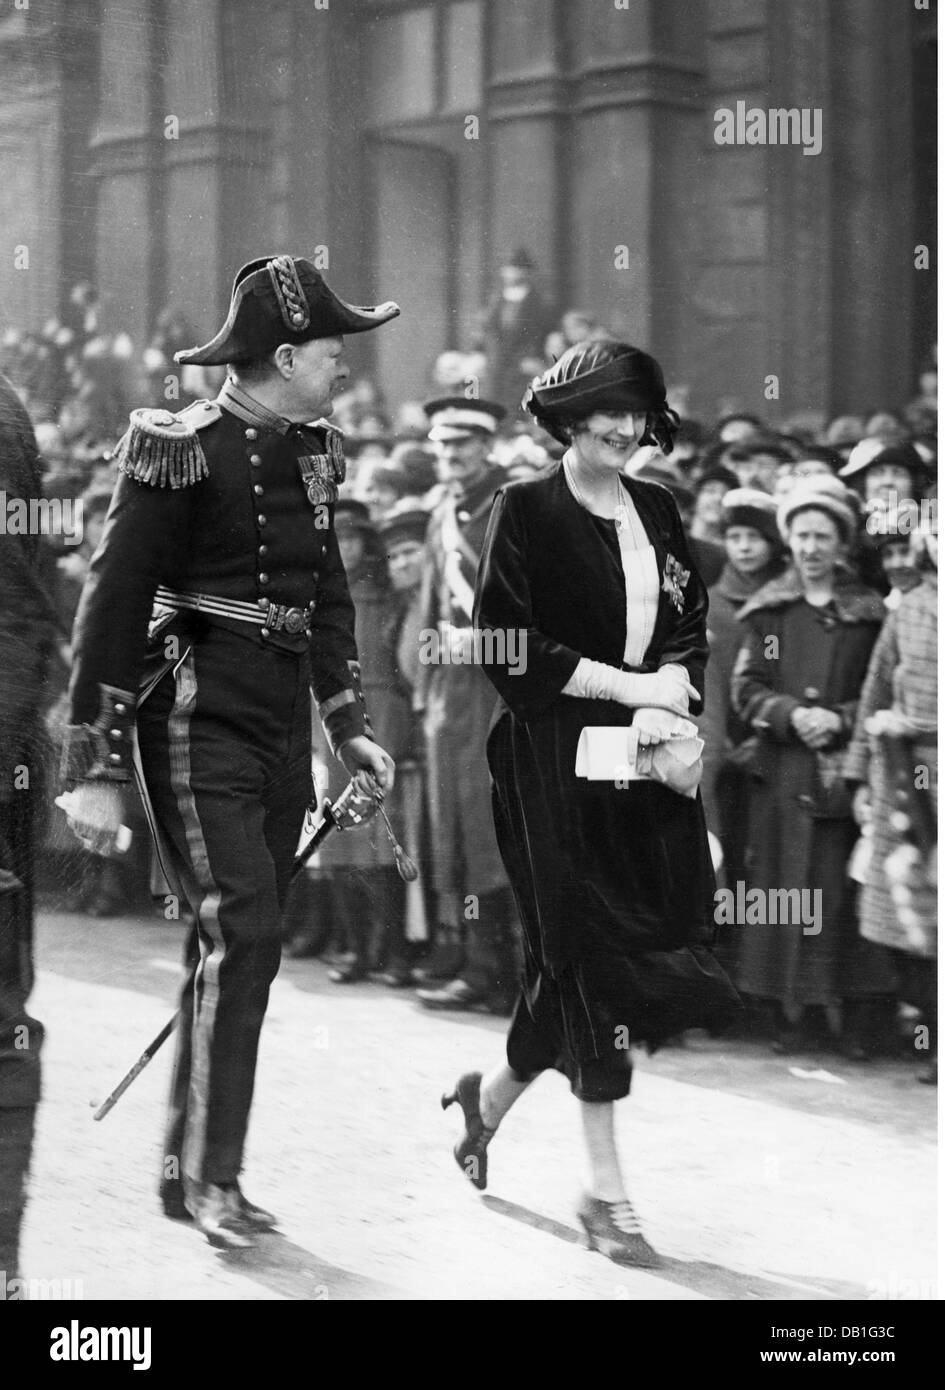 Churchill, Winston Spencer, 30.11.1874 - 24.1.1965, britischer Politiker (Lib.), Staatssekretär für die Kolonien 13.2.1921 - 19.10.1922, mit Frau Clementine während der Hochzeit von Prinzessin Mary of Great Britain, Westminster, London, 28.2.1922, Stockfoto